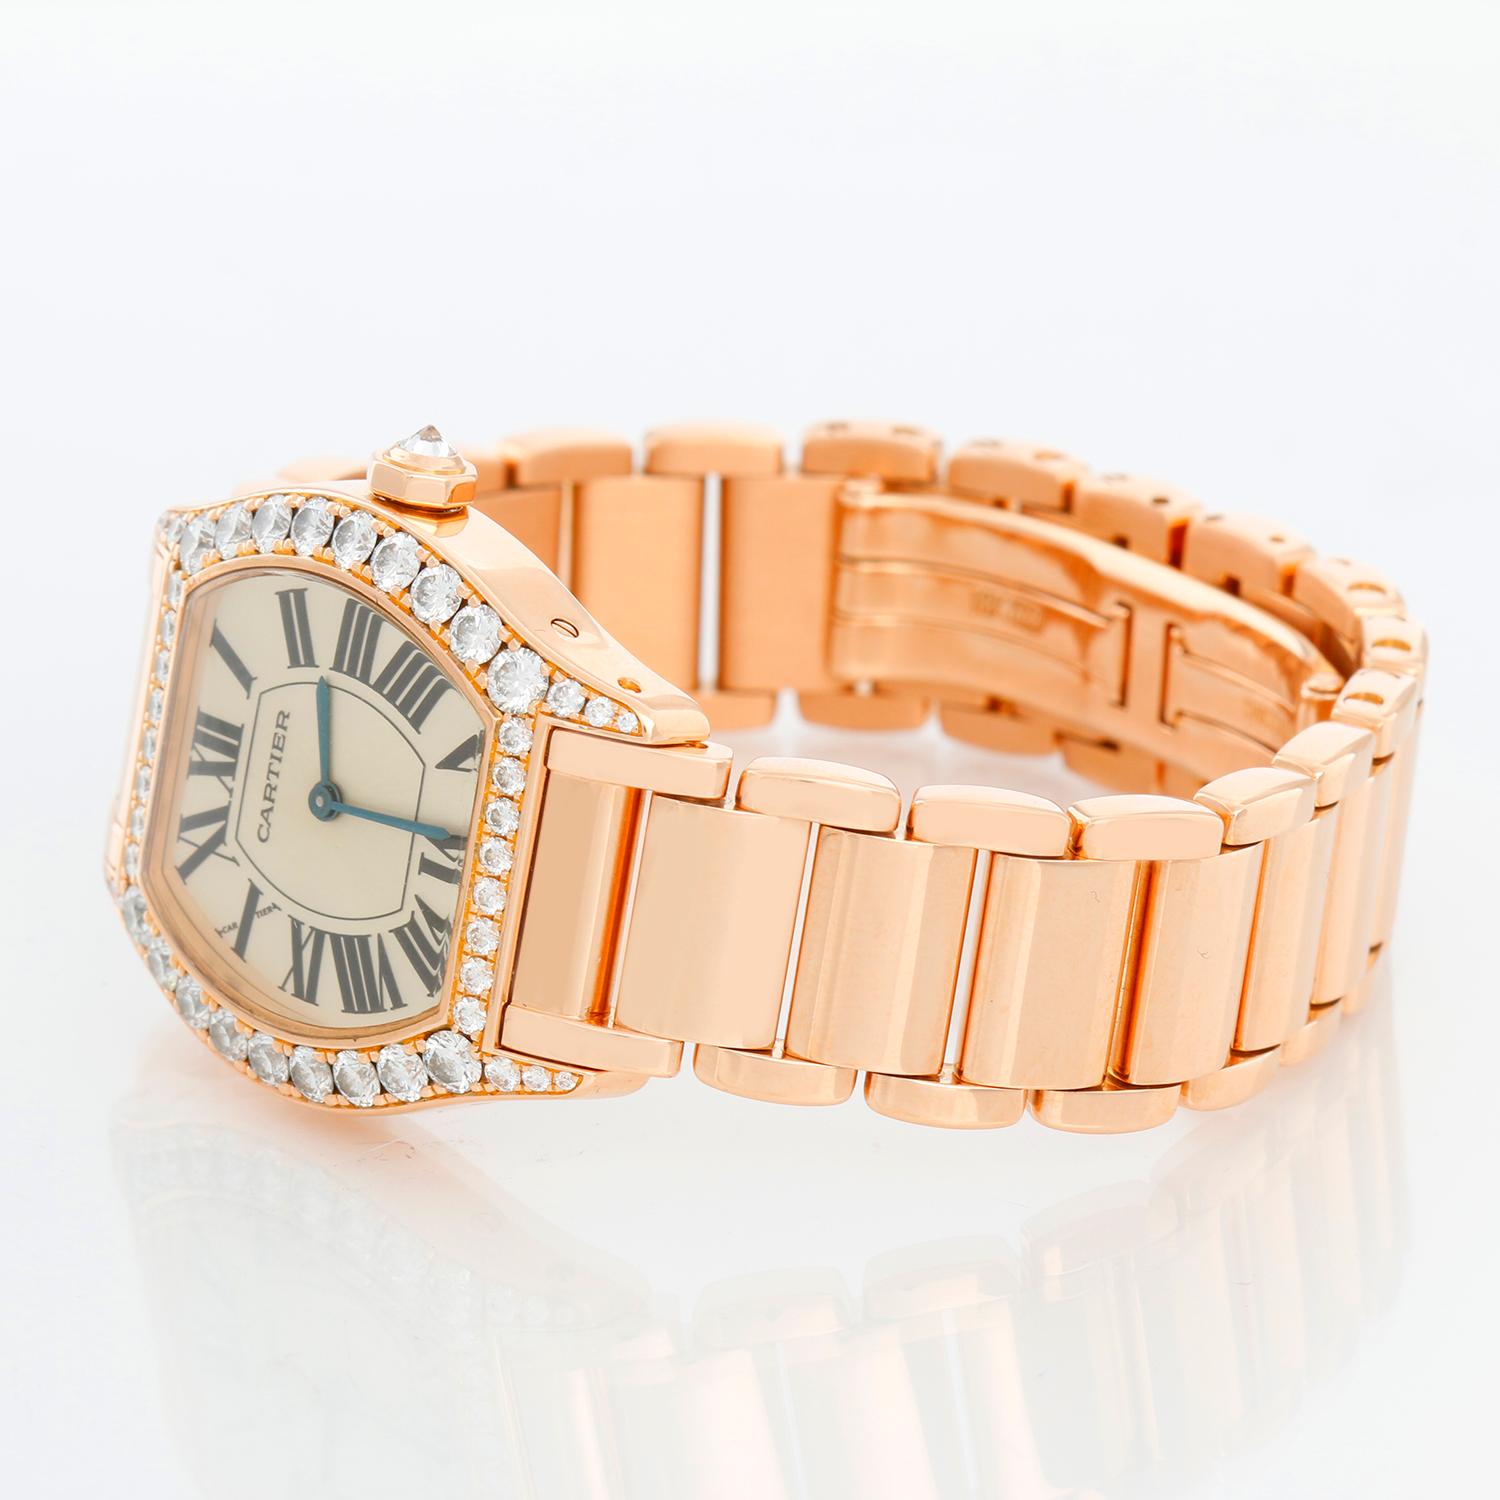 Cartier Tortue Damen Rose Gold Diamond Watch Ref 2645 - Handaufzug. Gehäuse aus Roségold mit Diamanten (20 mm x 27 mm). Silbernes Zifferblatt mit römischen Ziffern. 18K Rose Gold Armband; wird bis zu einem 6 1/2 Zoll Handgelenk passen. Pre-owned mit